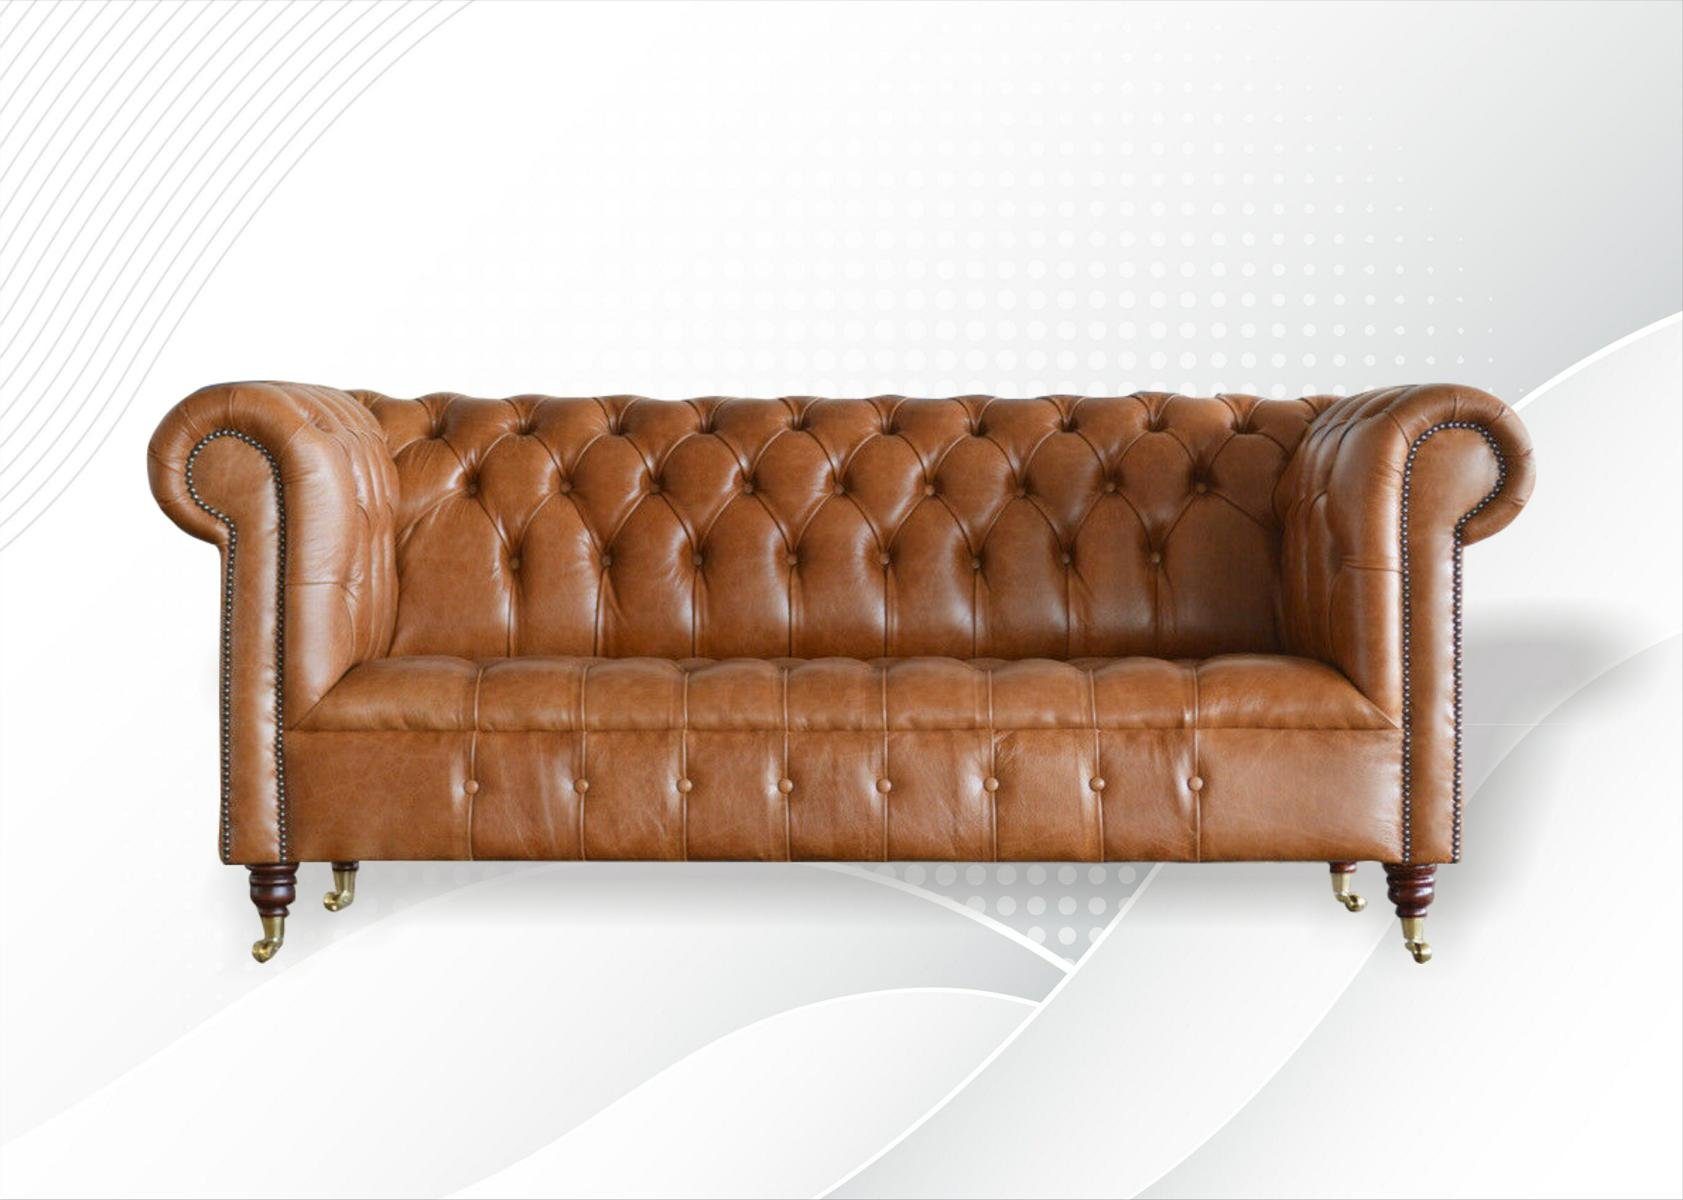 JVmoebel Chesterfield-Sofa, Chesterfield 3 Sitzer Design Sofa Couch 197 cm, Die Rückenlehne mit Knöpfen.